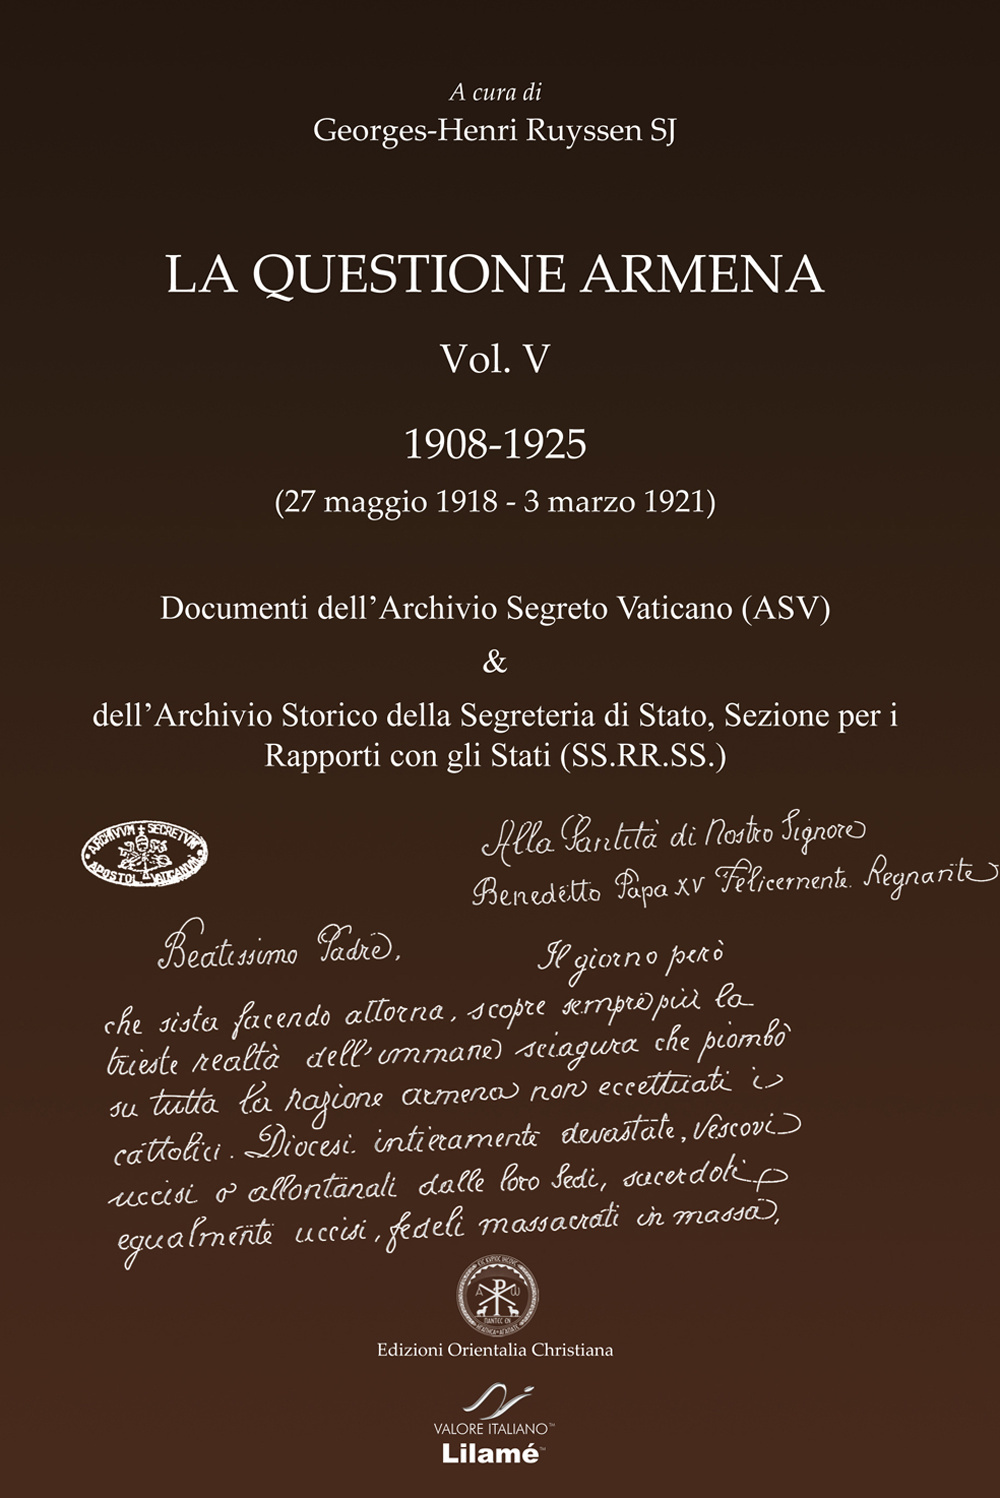 La questione armena 1908-1925. Vol. 5: Documenti dell'archivio segreto vaticano (ASV) & archivio SS.RR.SS.